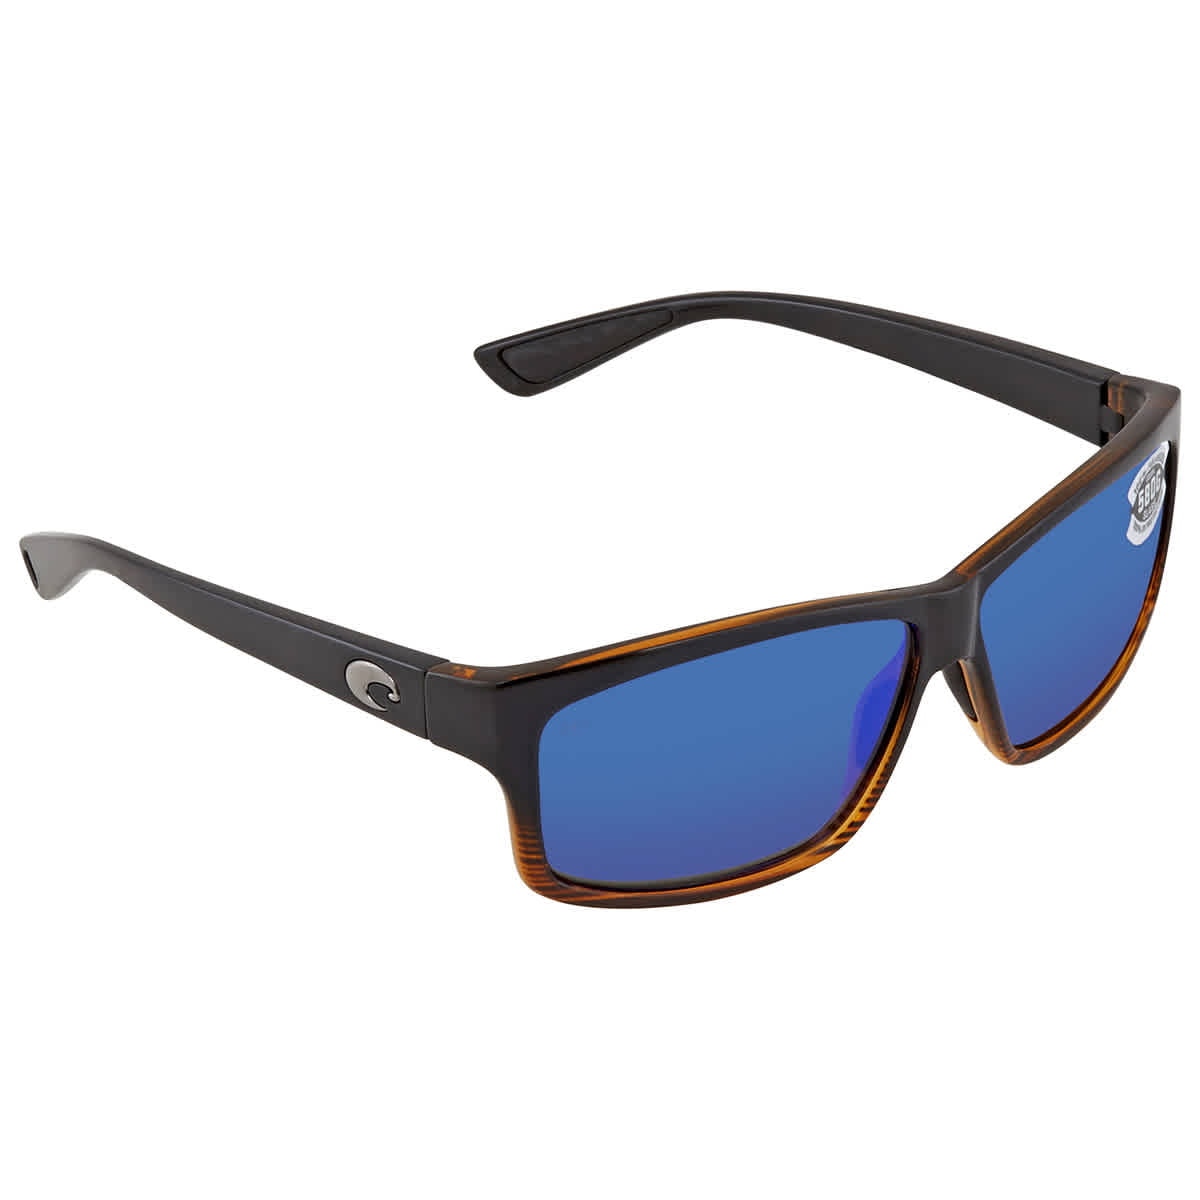 COSTA DEL MAR La Mar 580P POLARIZED Sunglasses Womens Wood Fade/Blue Mirror NEW 